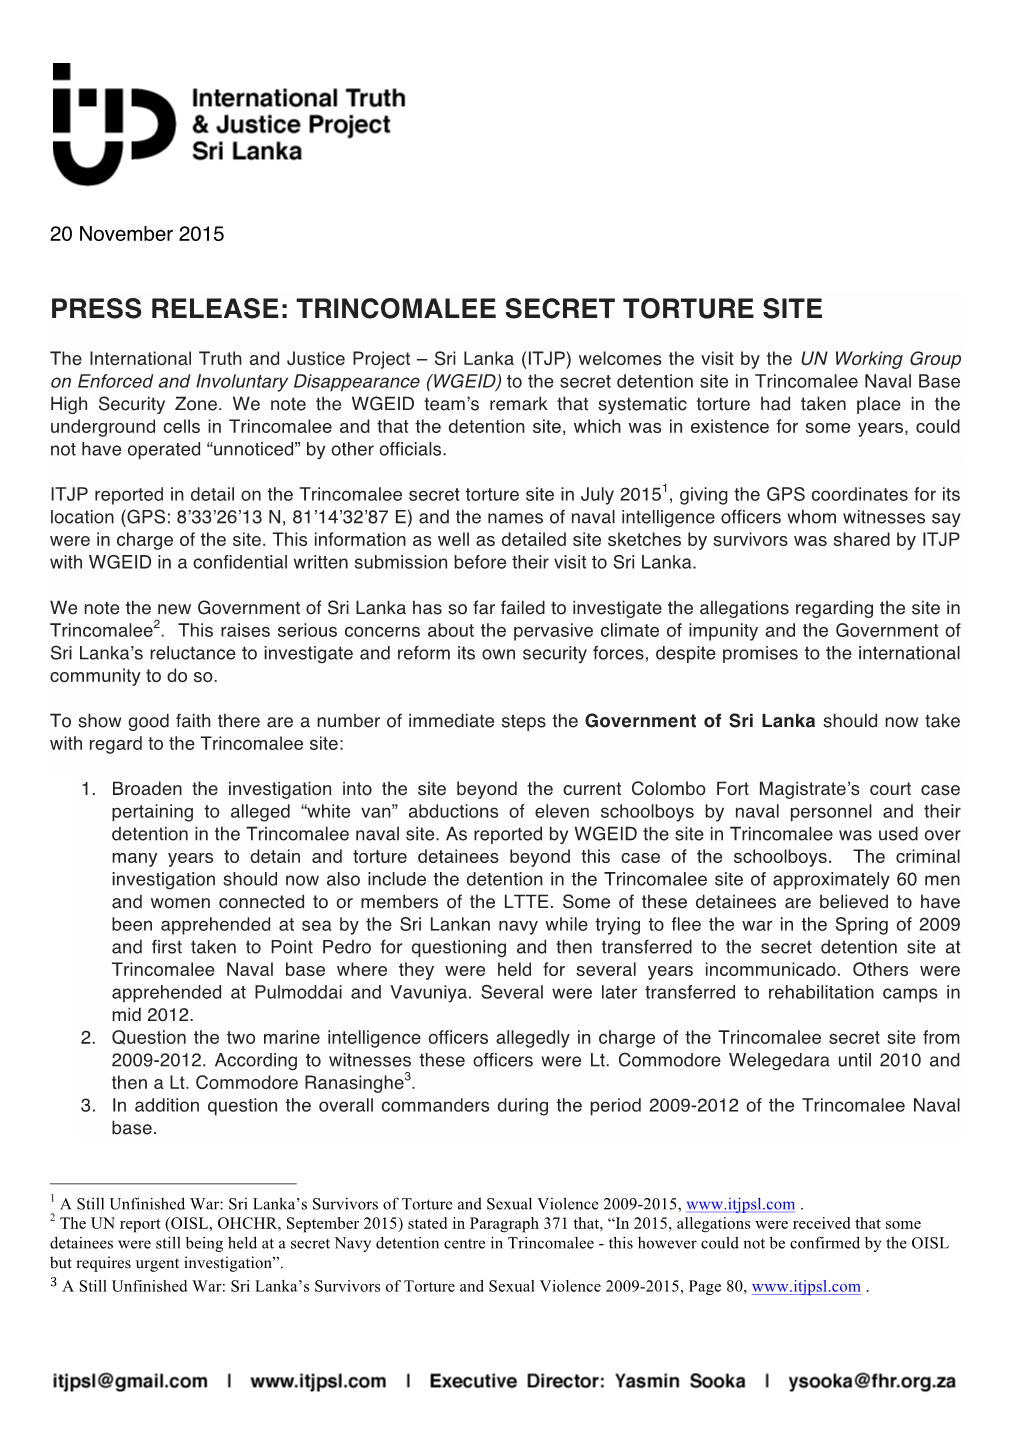 Press Release: Trincomalee Secret Torture Site